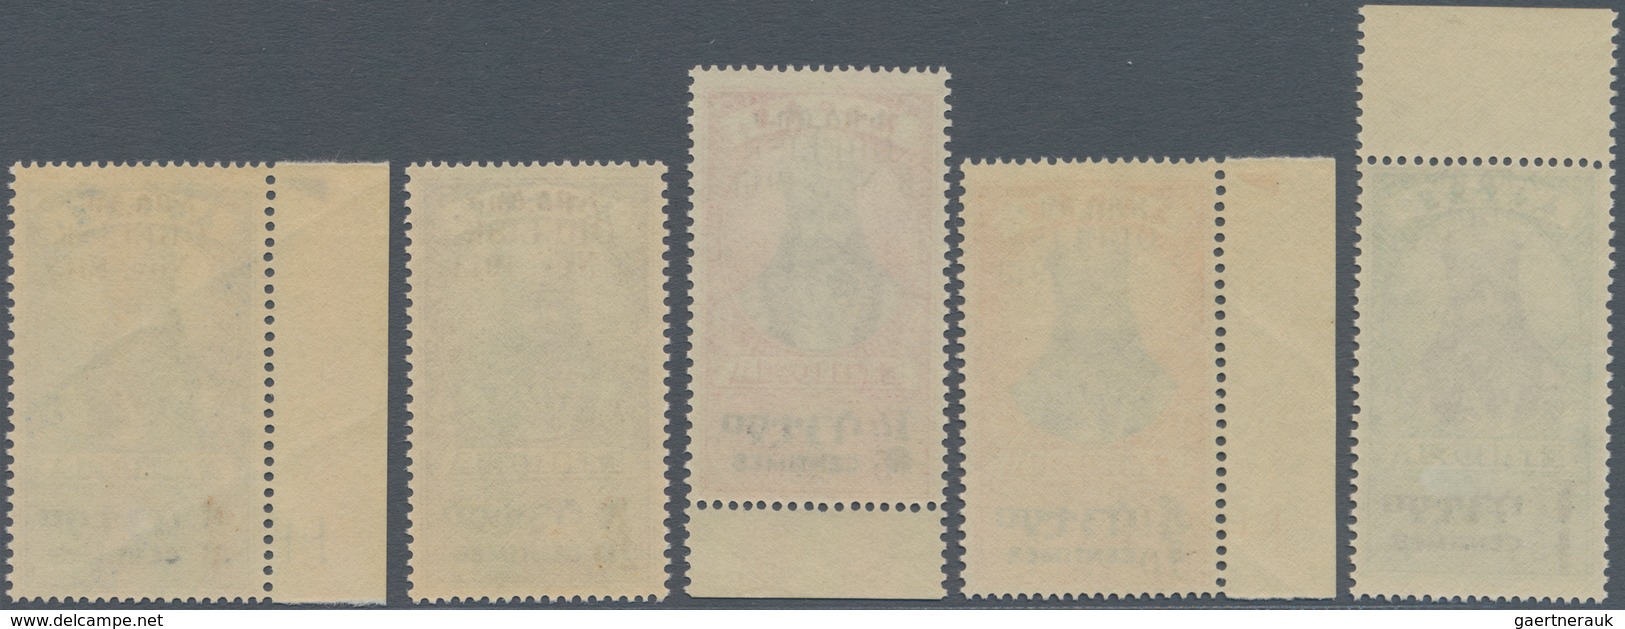 Äthiopien: 1943, War Memorial Overprints, Complete Set Of Five Values, Mint Never Hinged. - Ethiopia